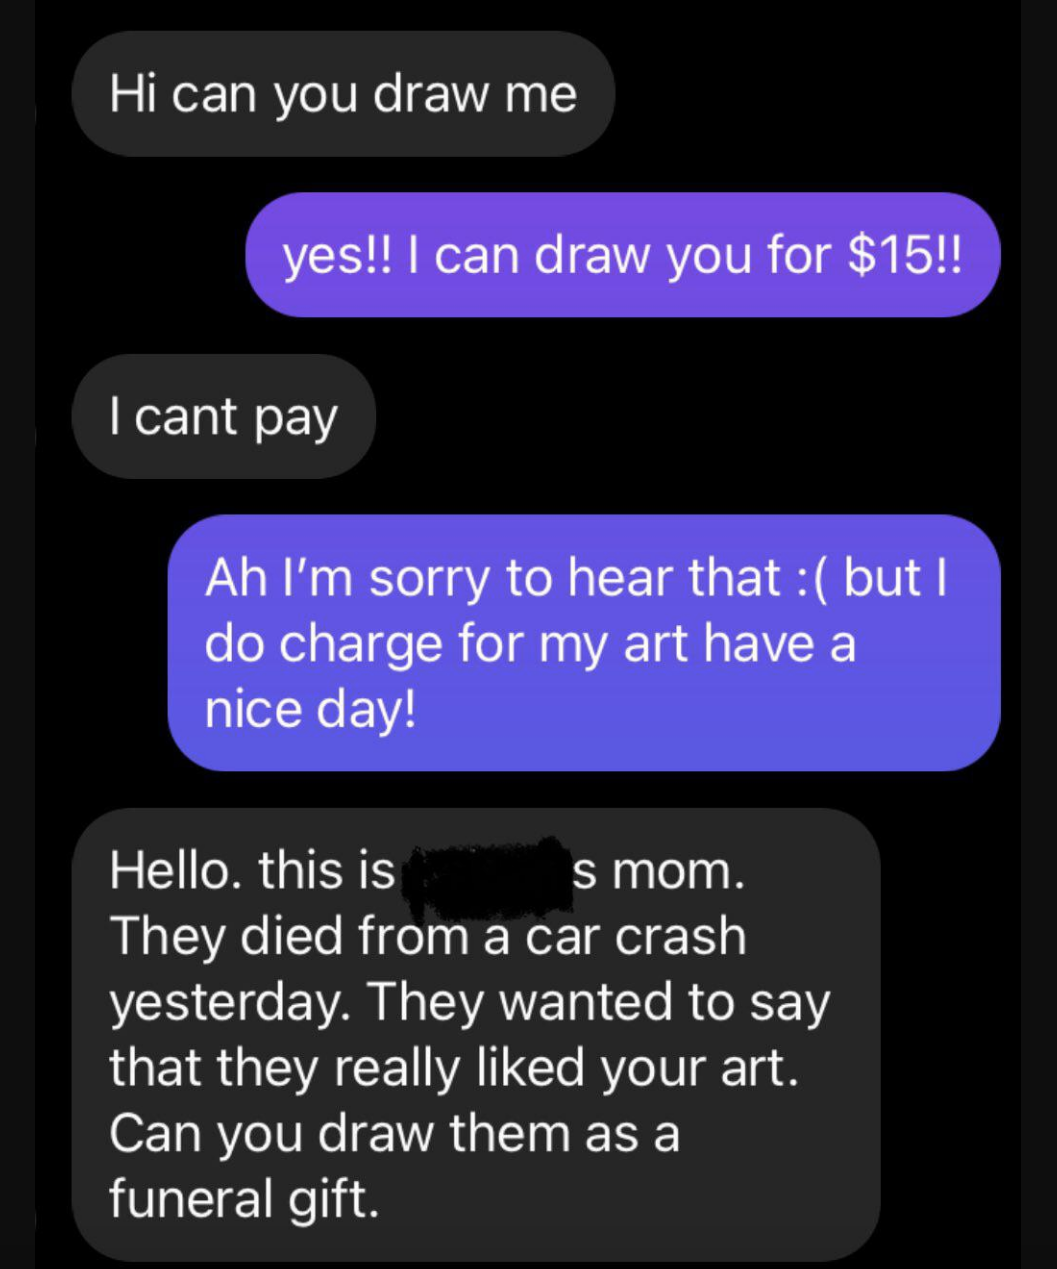 “他们想说他们真的很喜欢你的艺术。你能画作为葬礼礼物!”